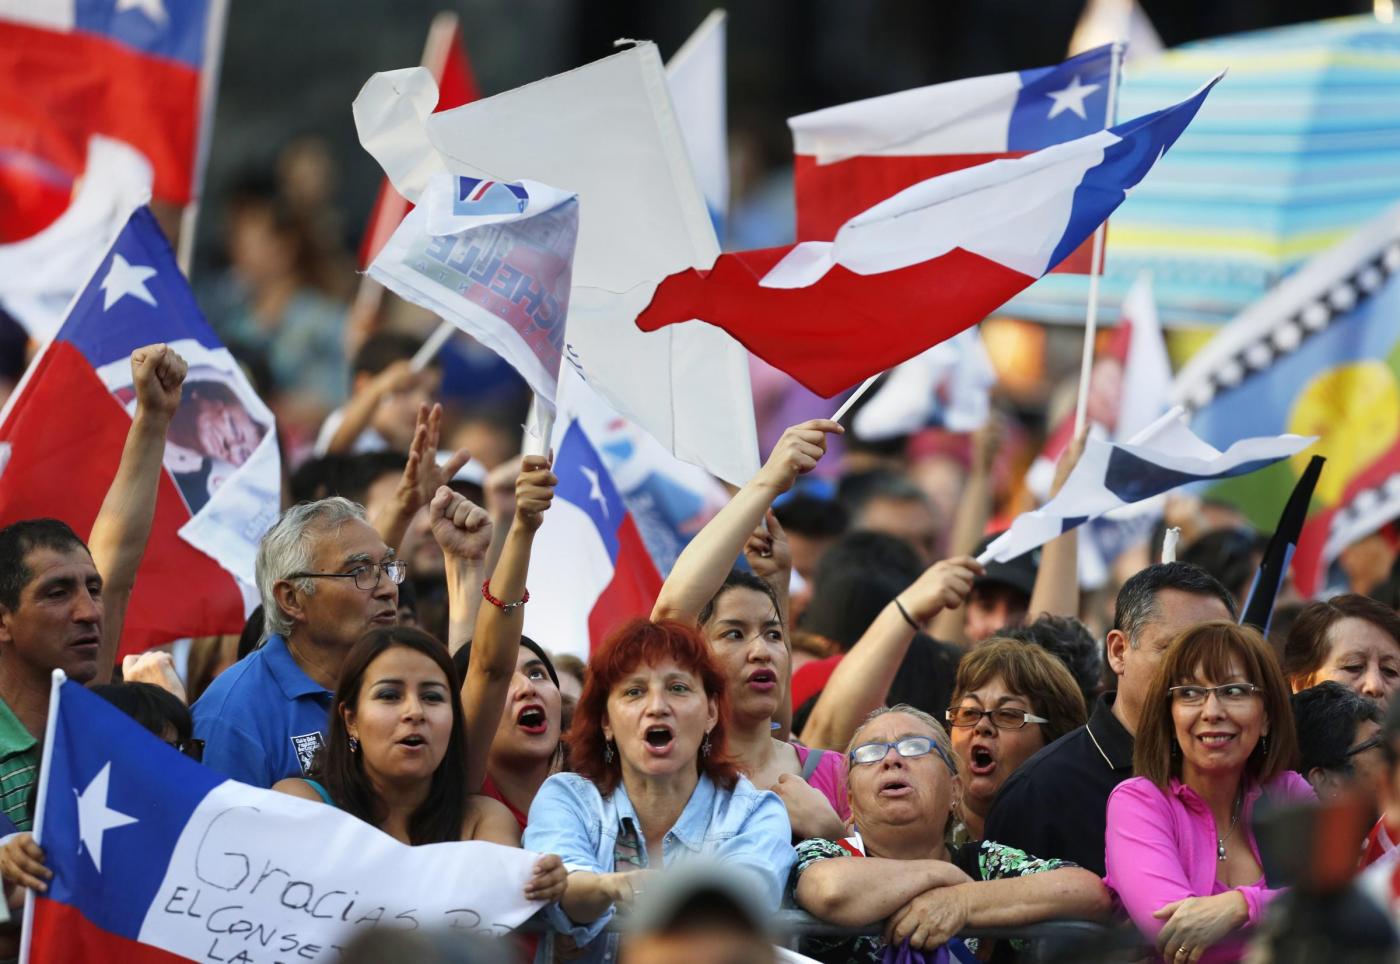 Michelle Bachelet vince il ballottaggio per la presidenza del Cile